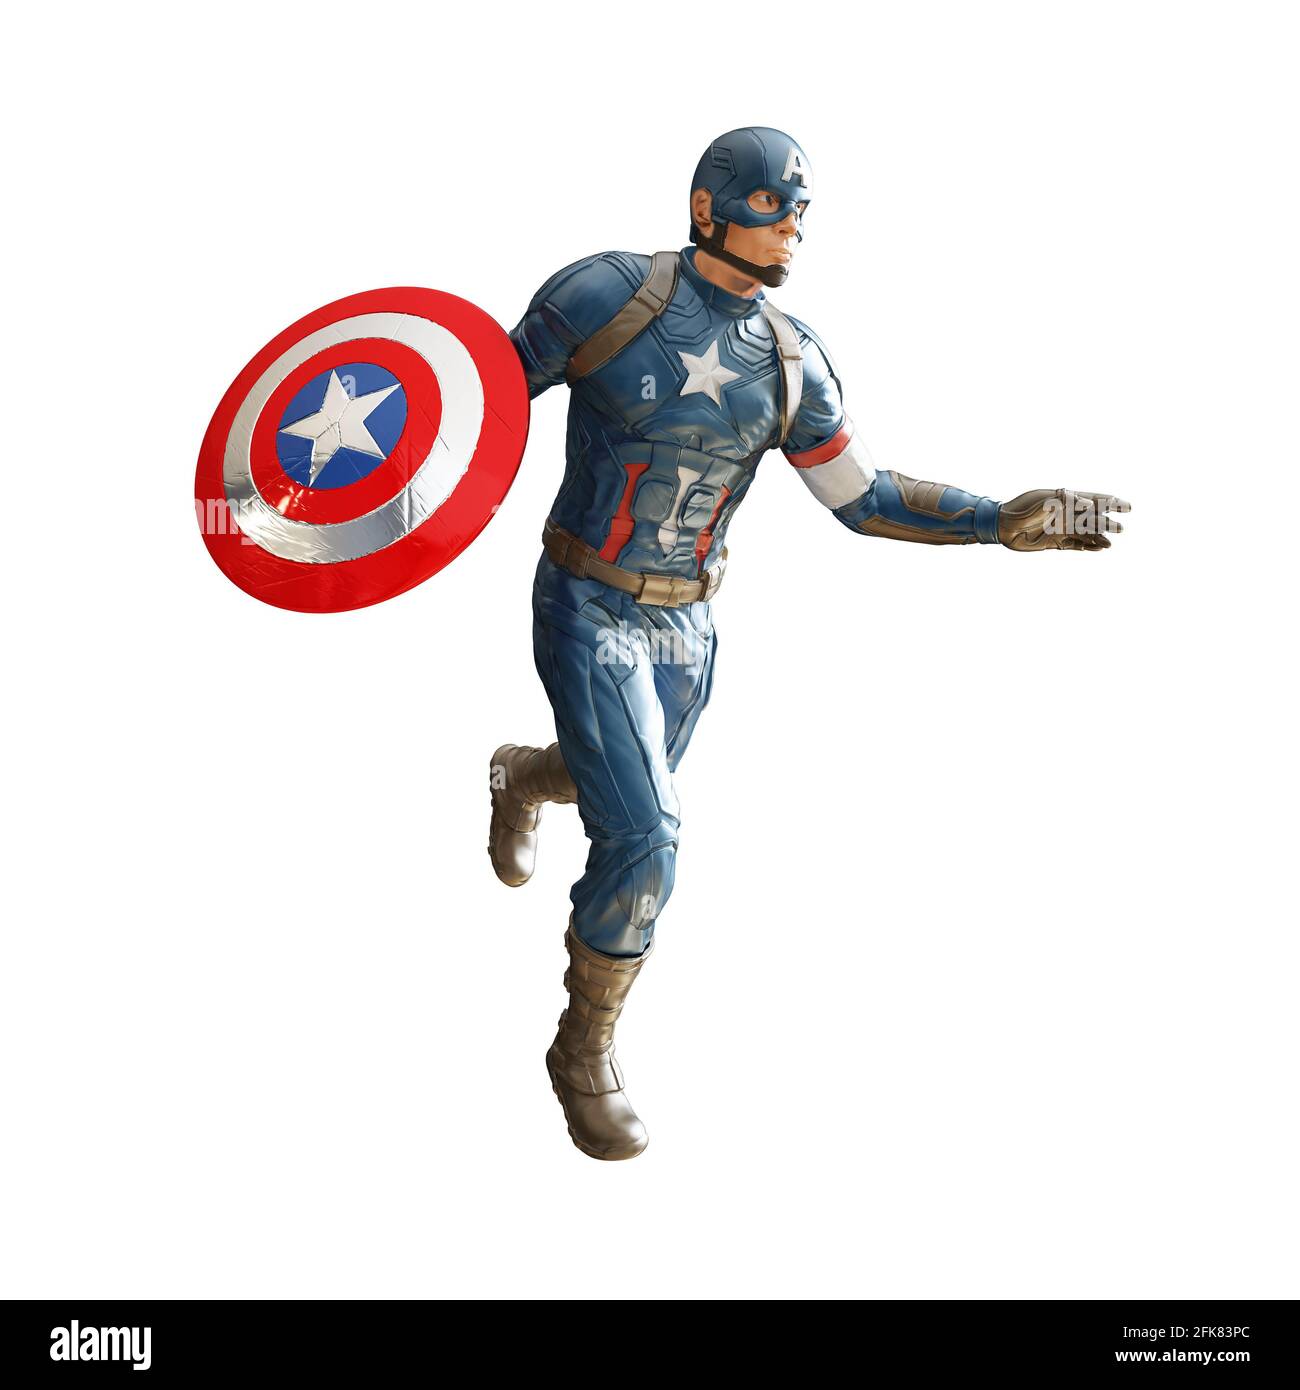 Captain america cartoon immagini e fotografie stock ad alta risoluzione -  Alamy